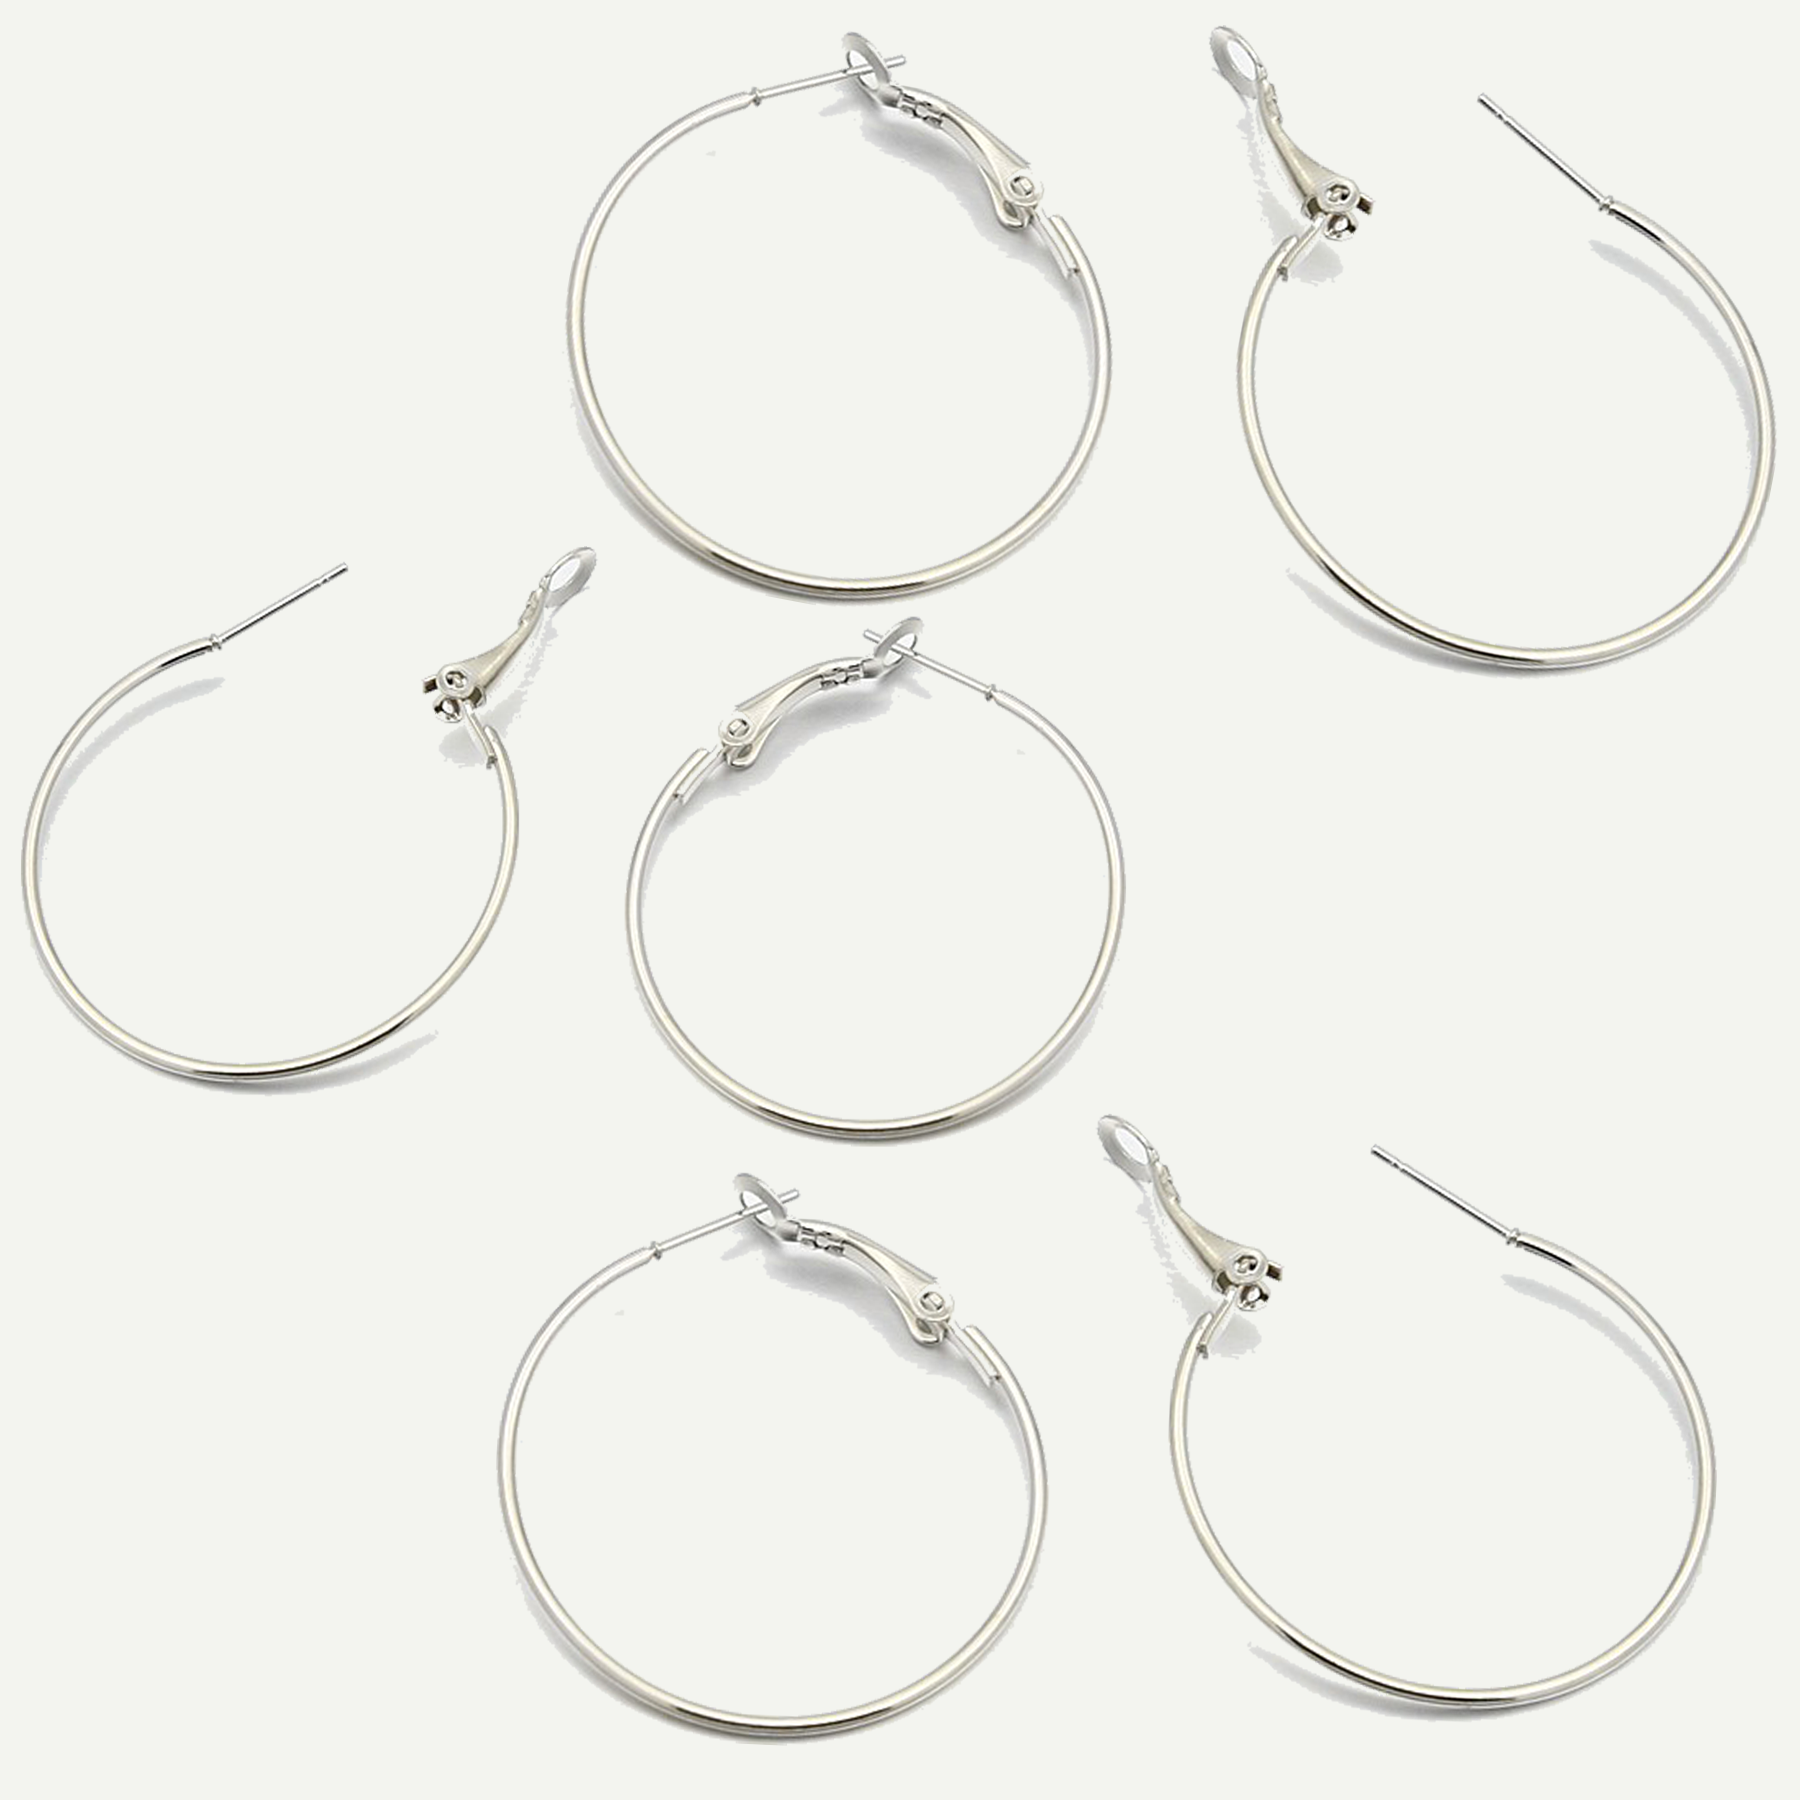 Iron Round Hoop Earrings Set of 3 Pairs